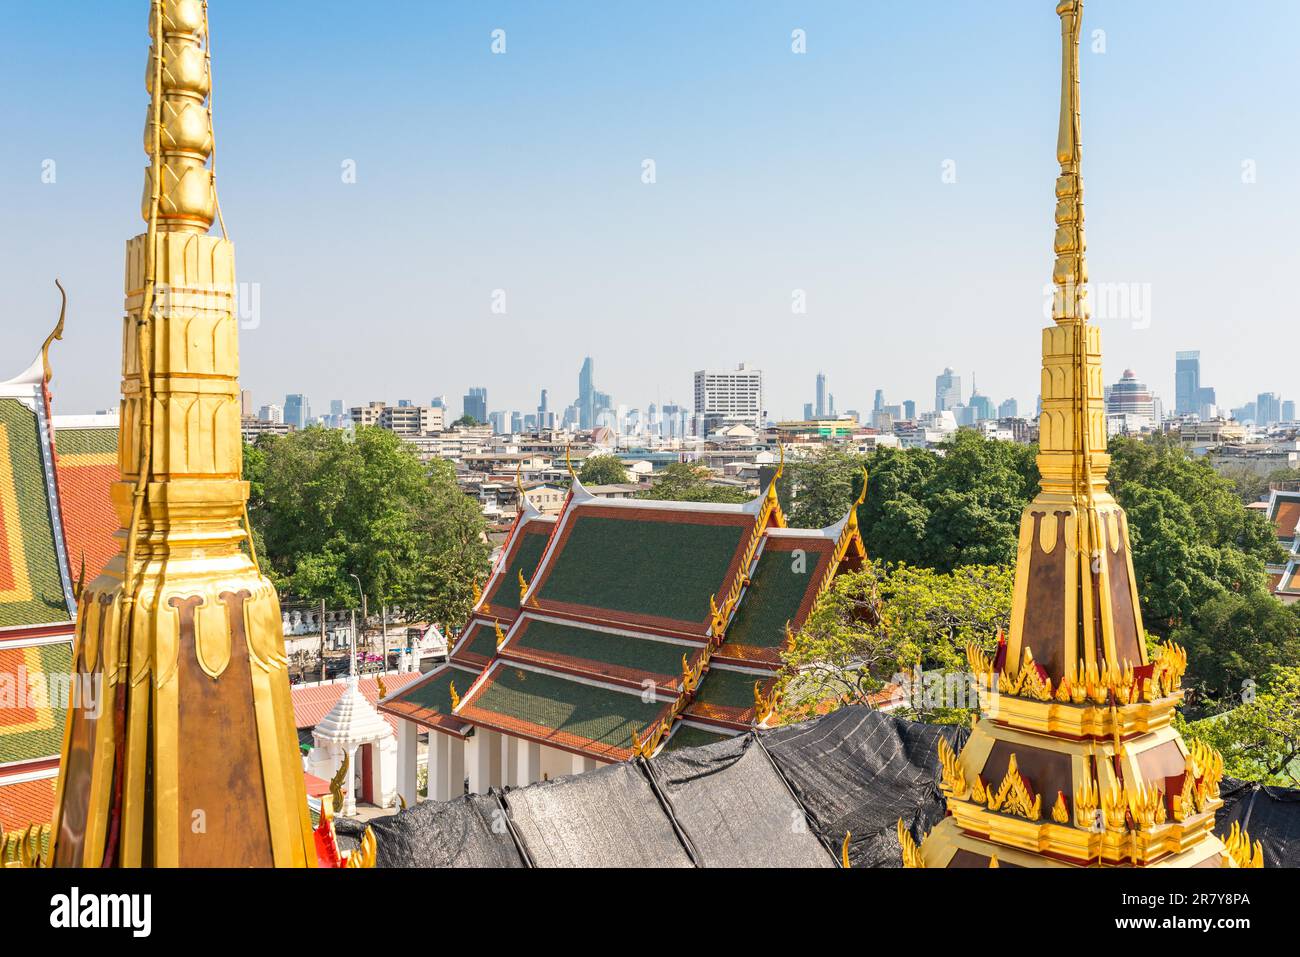 Vue depuis le temple bouddhiste Wat Ratchanatdaram jusqu'au quartier financier Sathon dans le centre-ville de Bangkok Banque D'Images